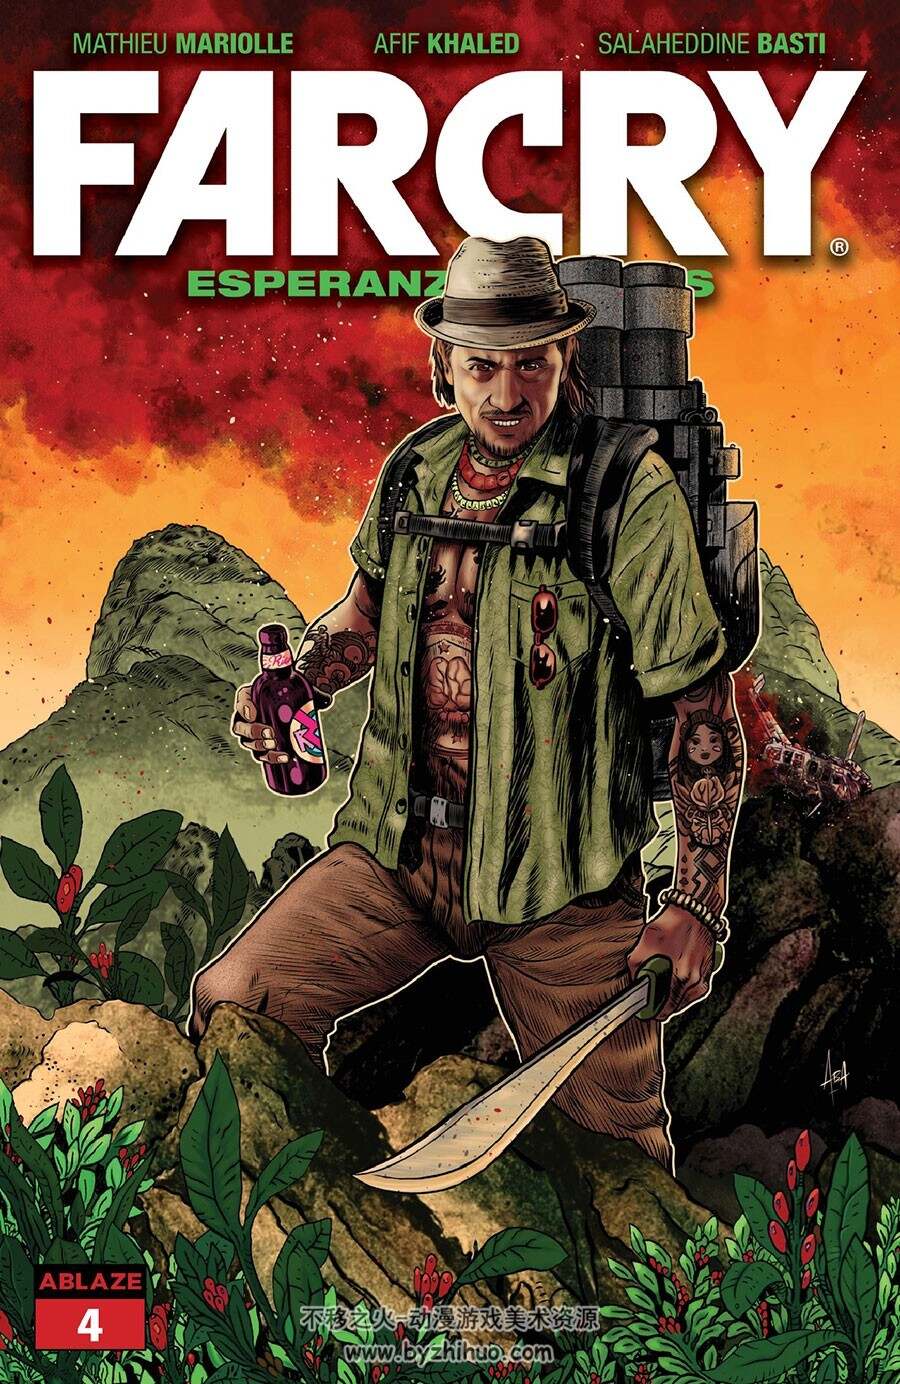 Far Cry Esperanzas Tears 第4册 Mathieu Mariolle 漫画下载